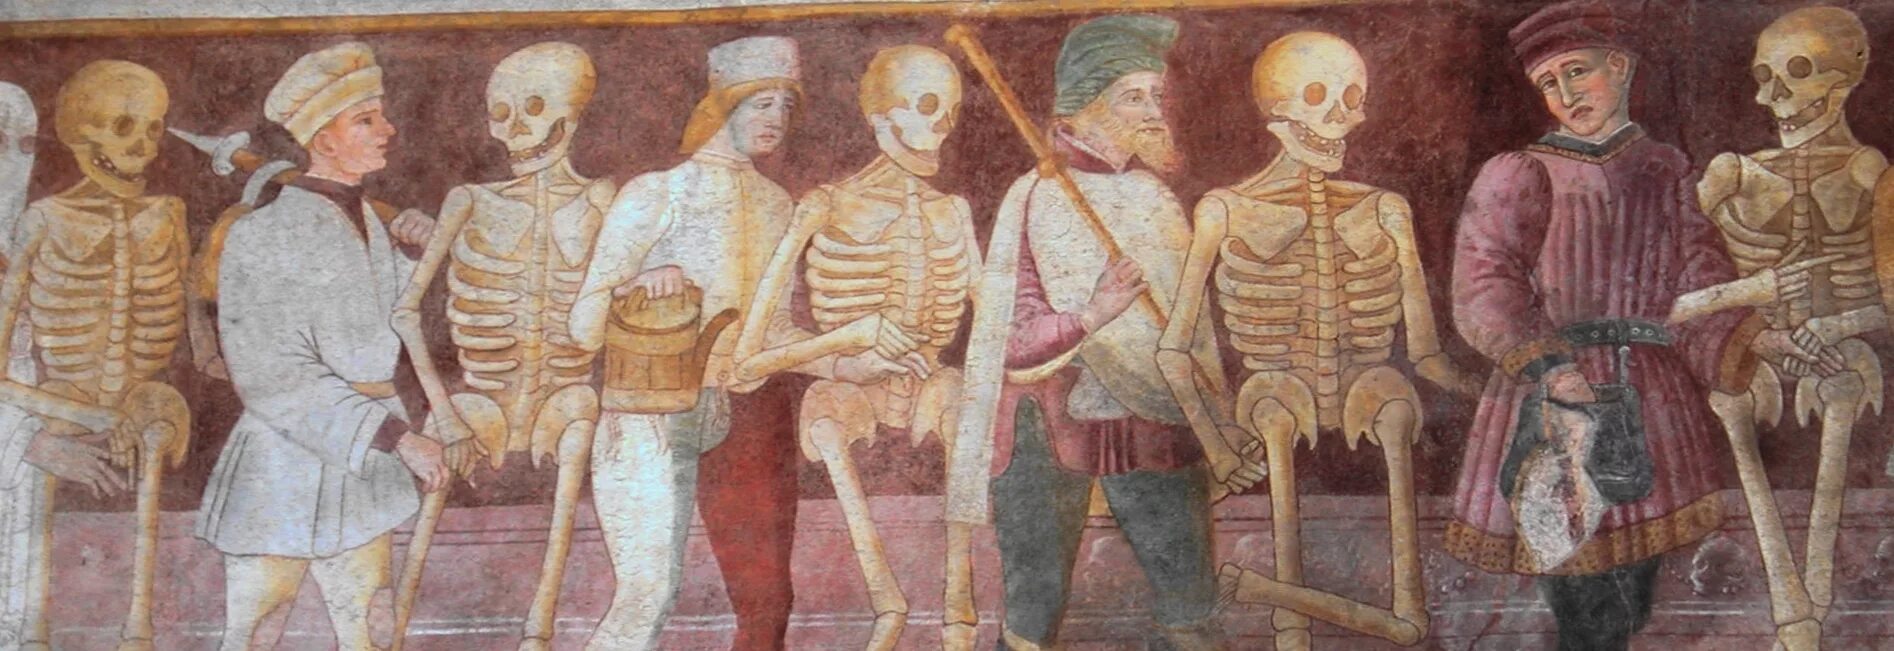 Новое время новые болезни. 1315-1317 Великий голод в Европе. Голод в средние века в Европе.